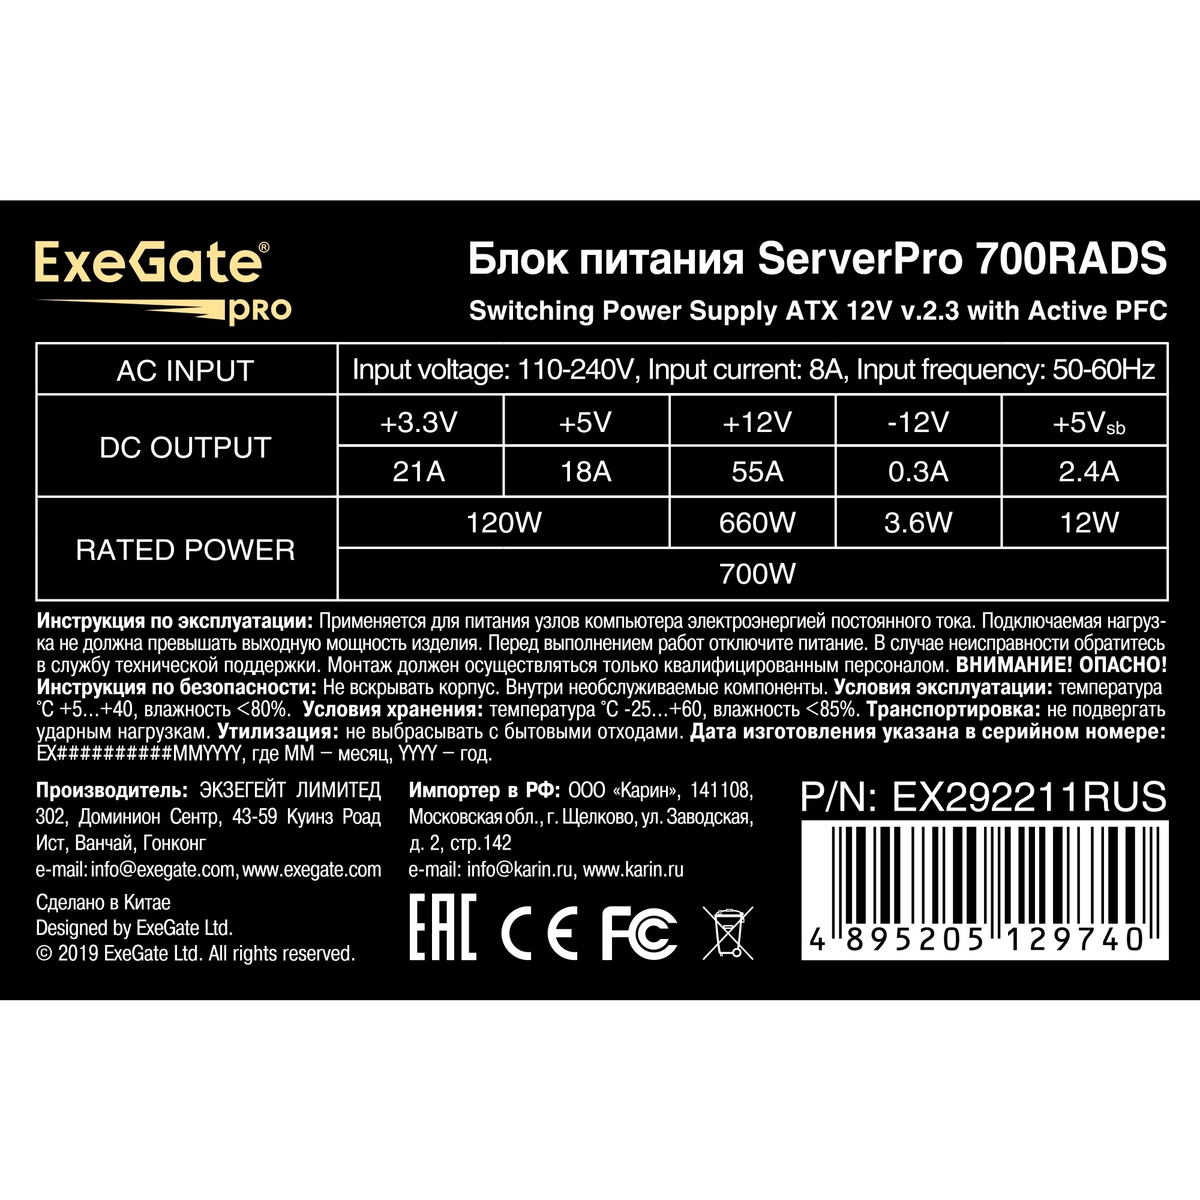 Серверный БП 700W ExeGate ServerPRO-700RADS